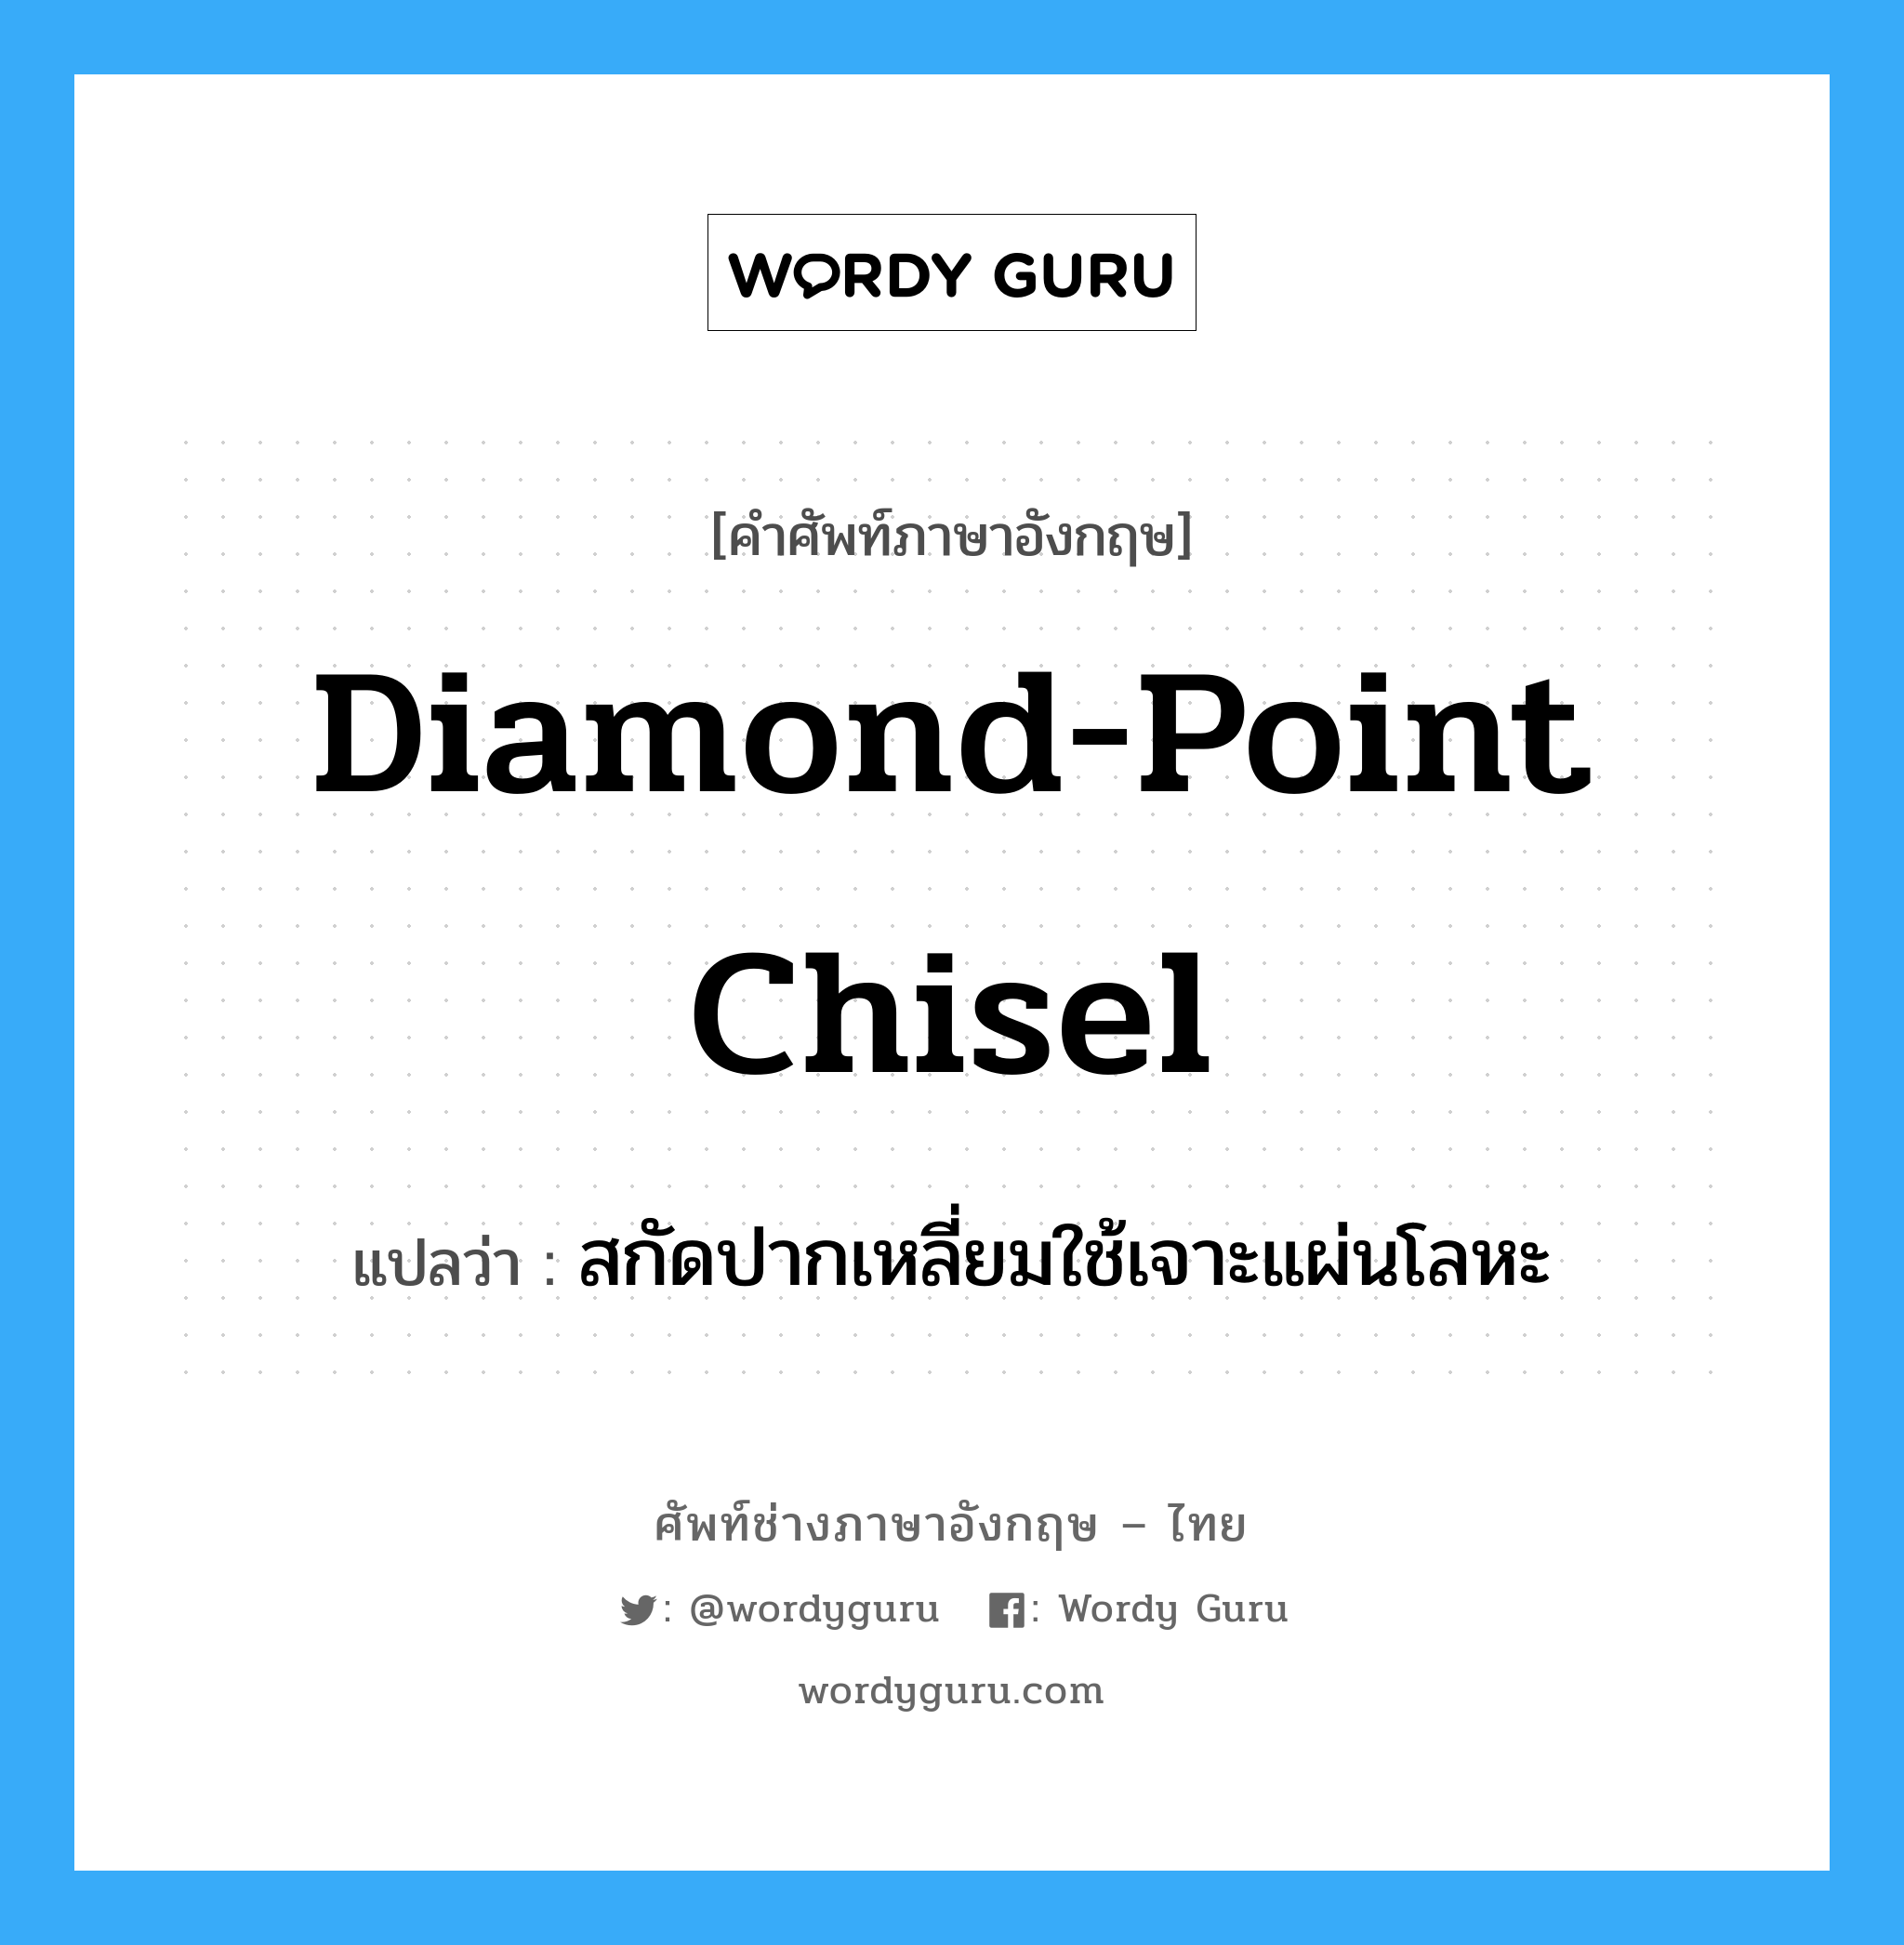 diamond-point chisel แปลว่า?, คำศัพท์ช่างภาษาอังกฤษ - ไทย diamond-point chisel คำศัพท์ภาษาอังกฤษ diamond-point chisel แปลว่า สกัดปากเหลี่ยมใช้เจาะแผ่นโลหะ